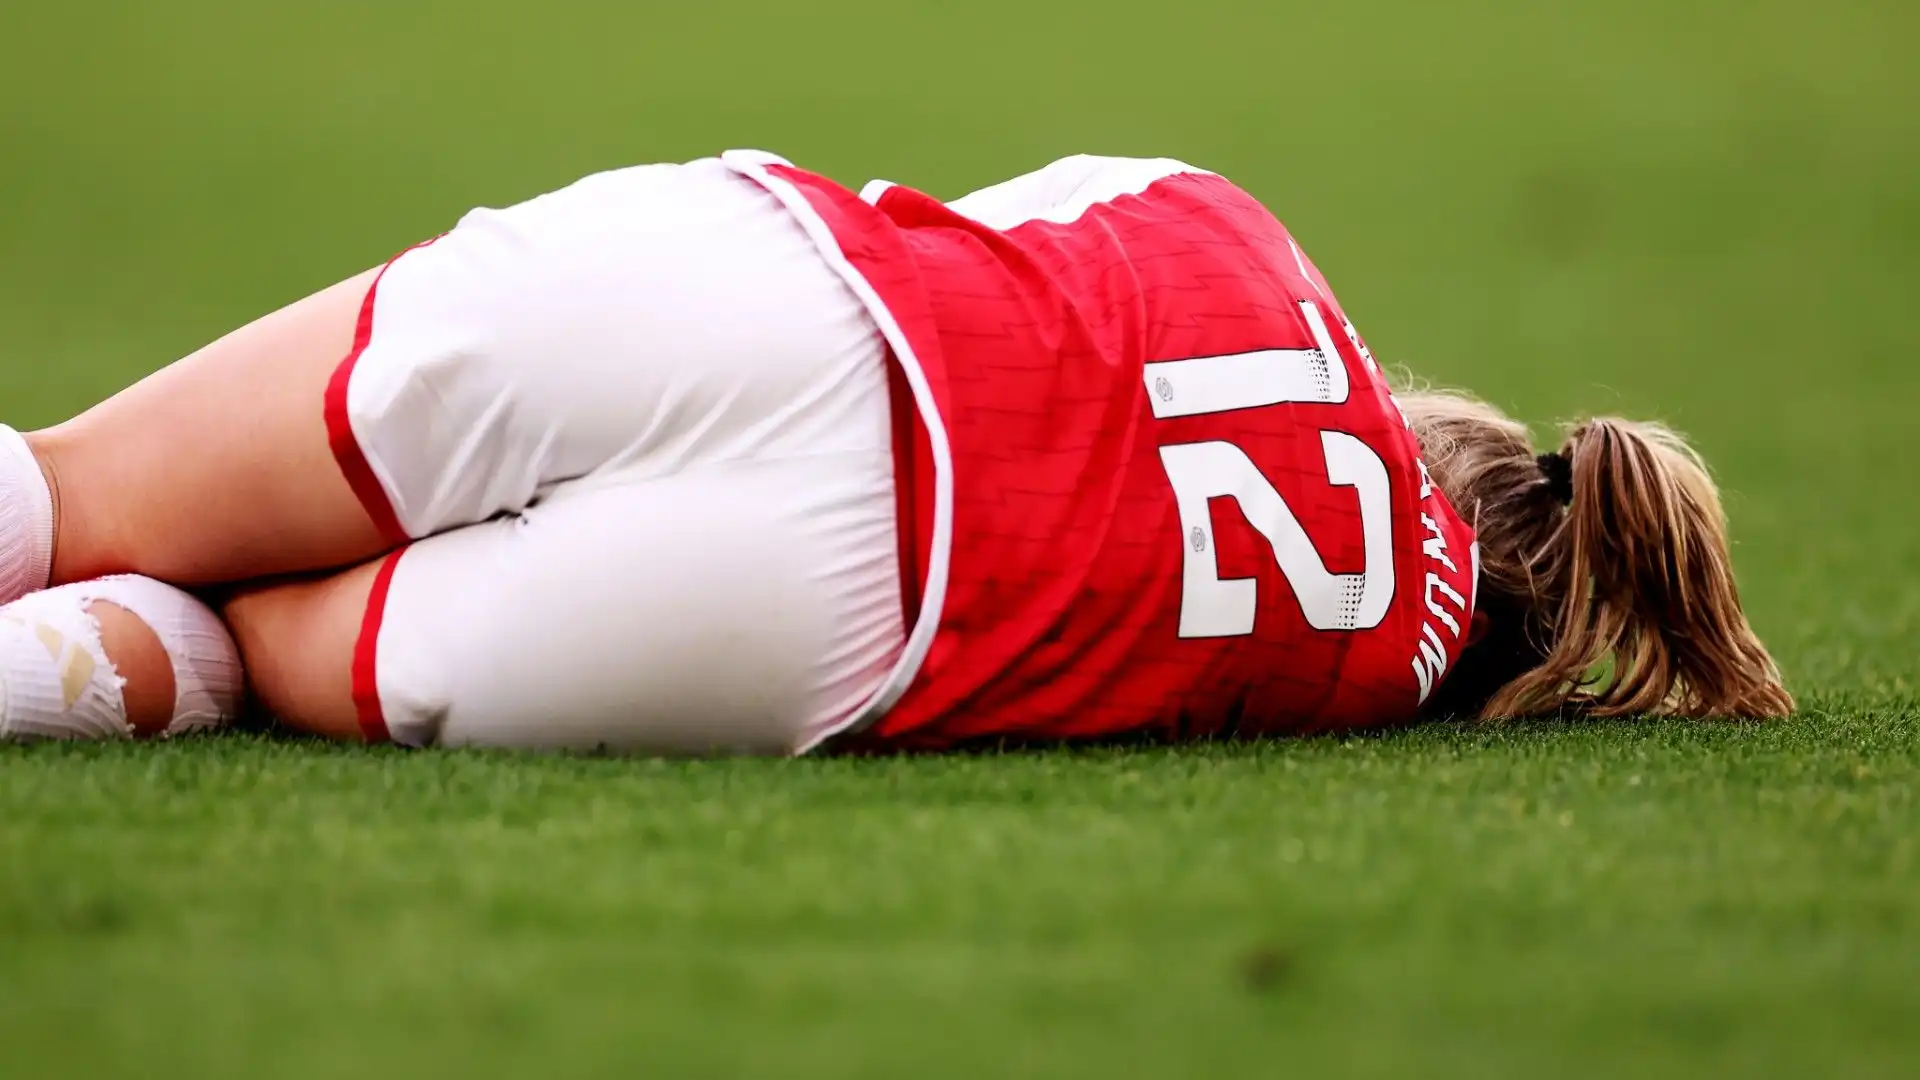 La giocatrice norvegese dell'Arsenal Frida Maanum è improvvisamente collassata in campo durante il match